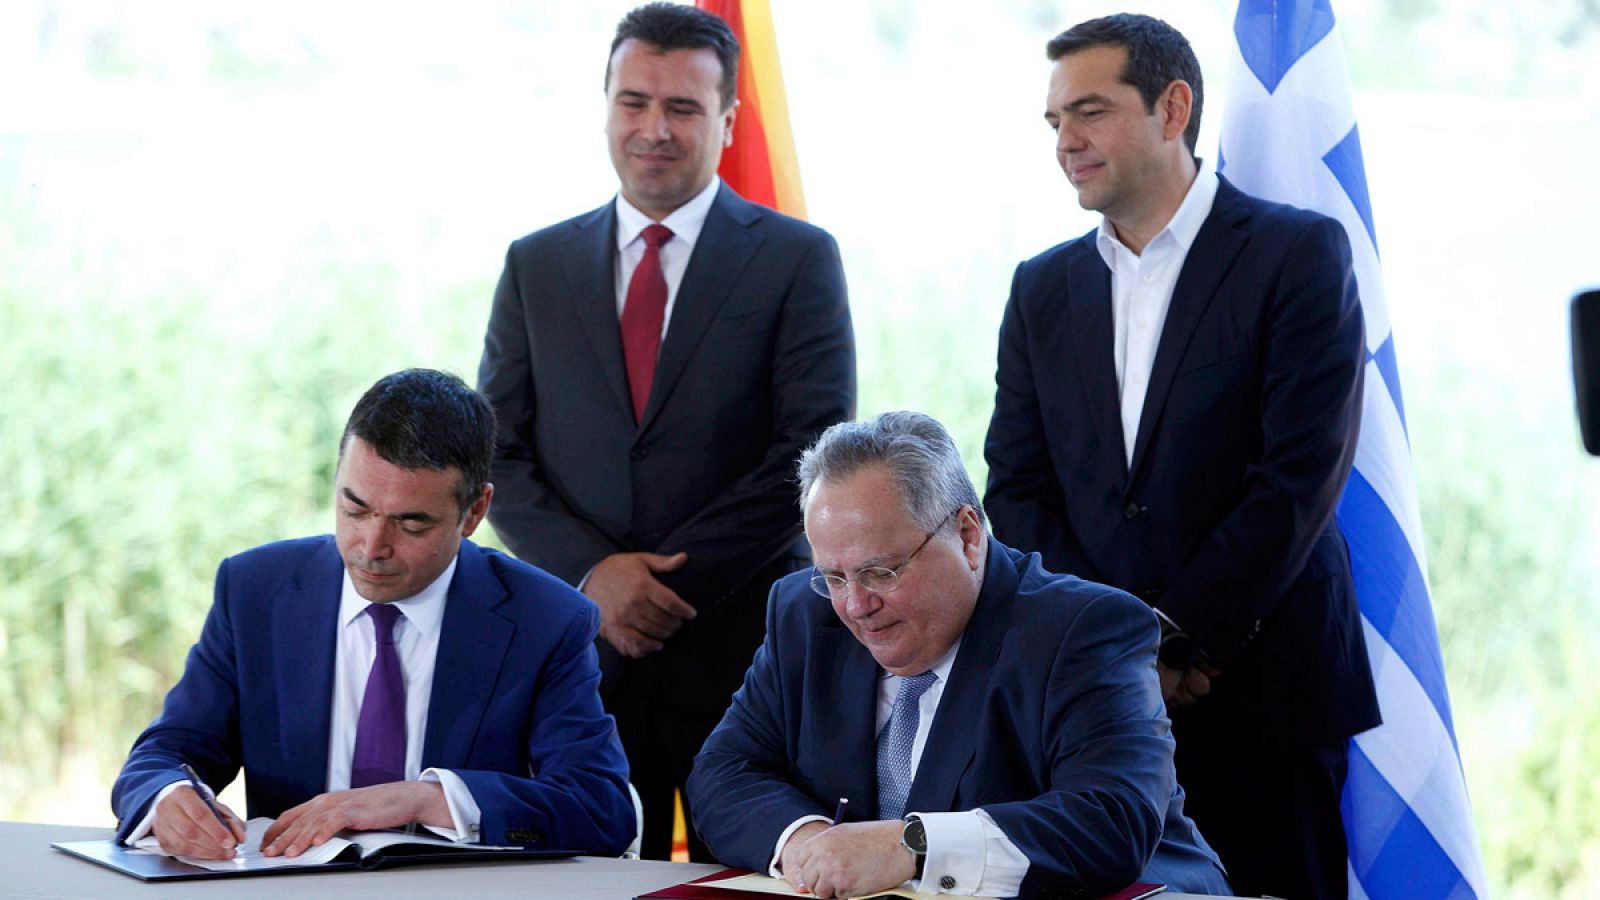 Los ministros de Asuntos Exteriores macedonio, Nikola Dimitrov, y griego, Nikos Kotziás, firman el acuerdo en presencia de los primeros ministros Alexis Tsipras y Zoran Zaev